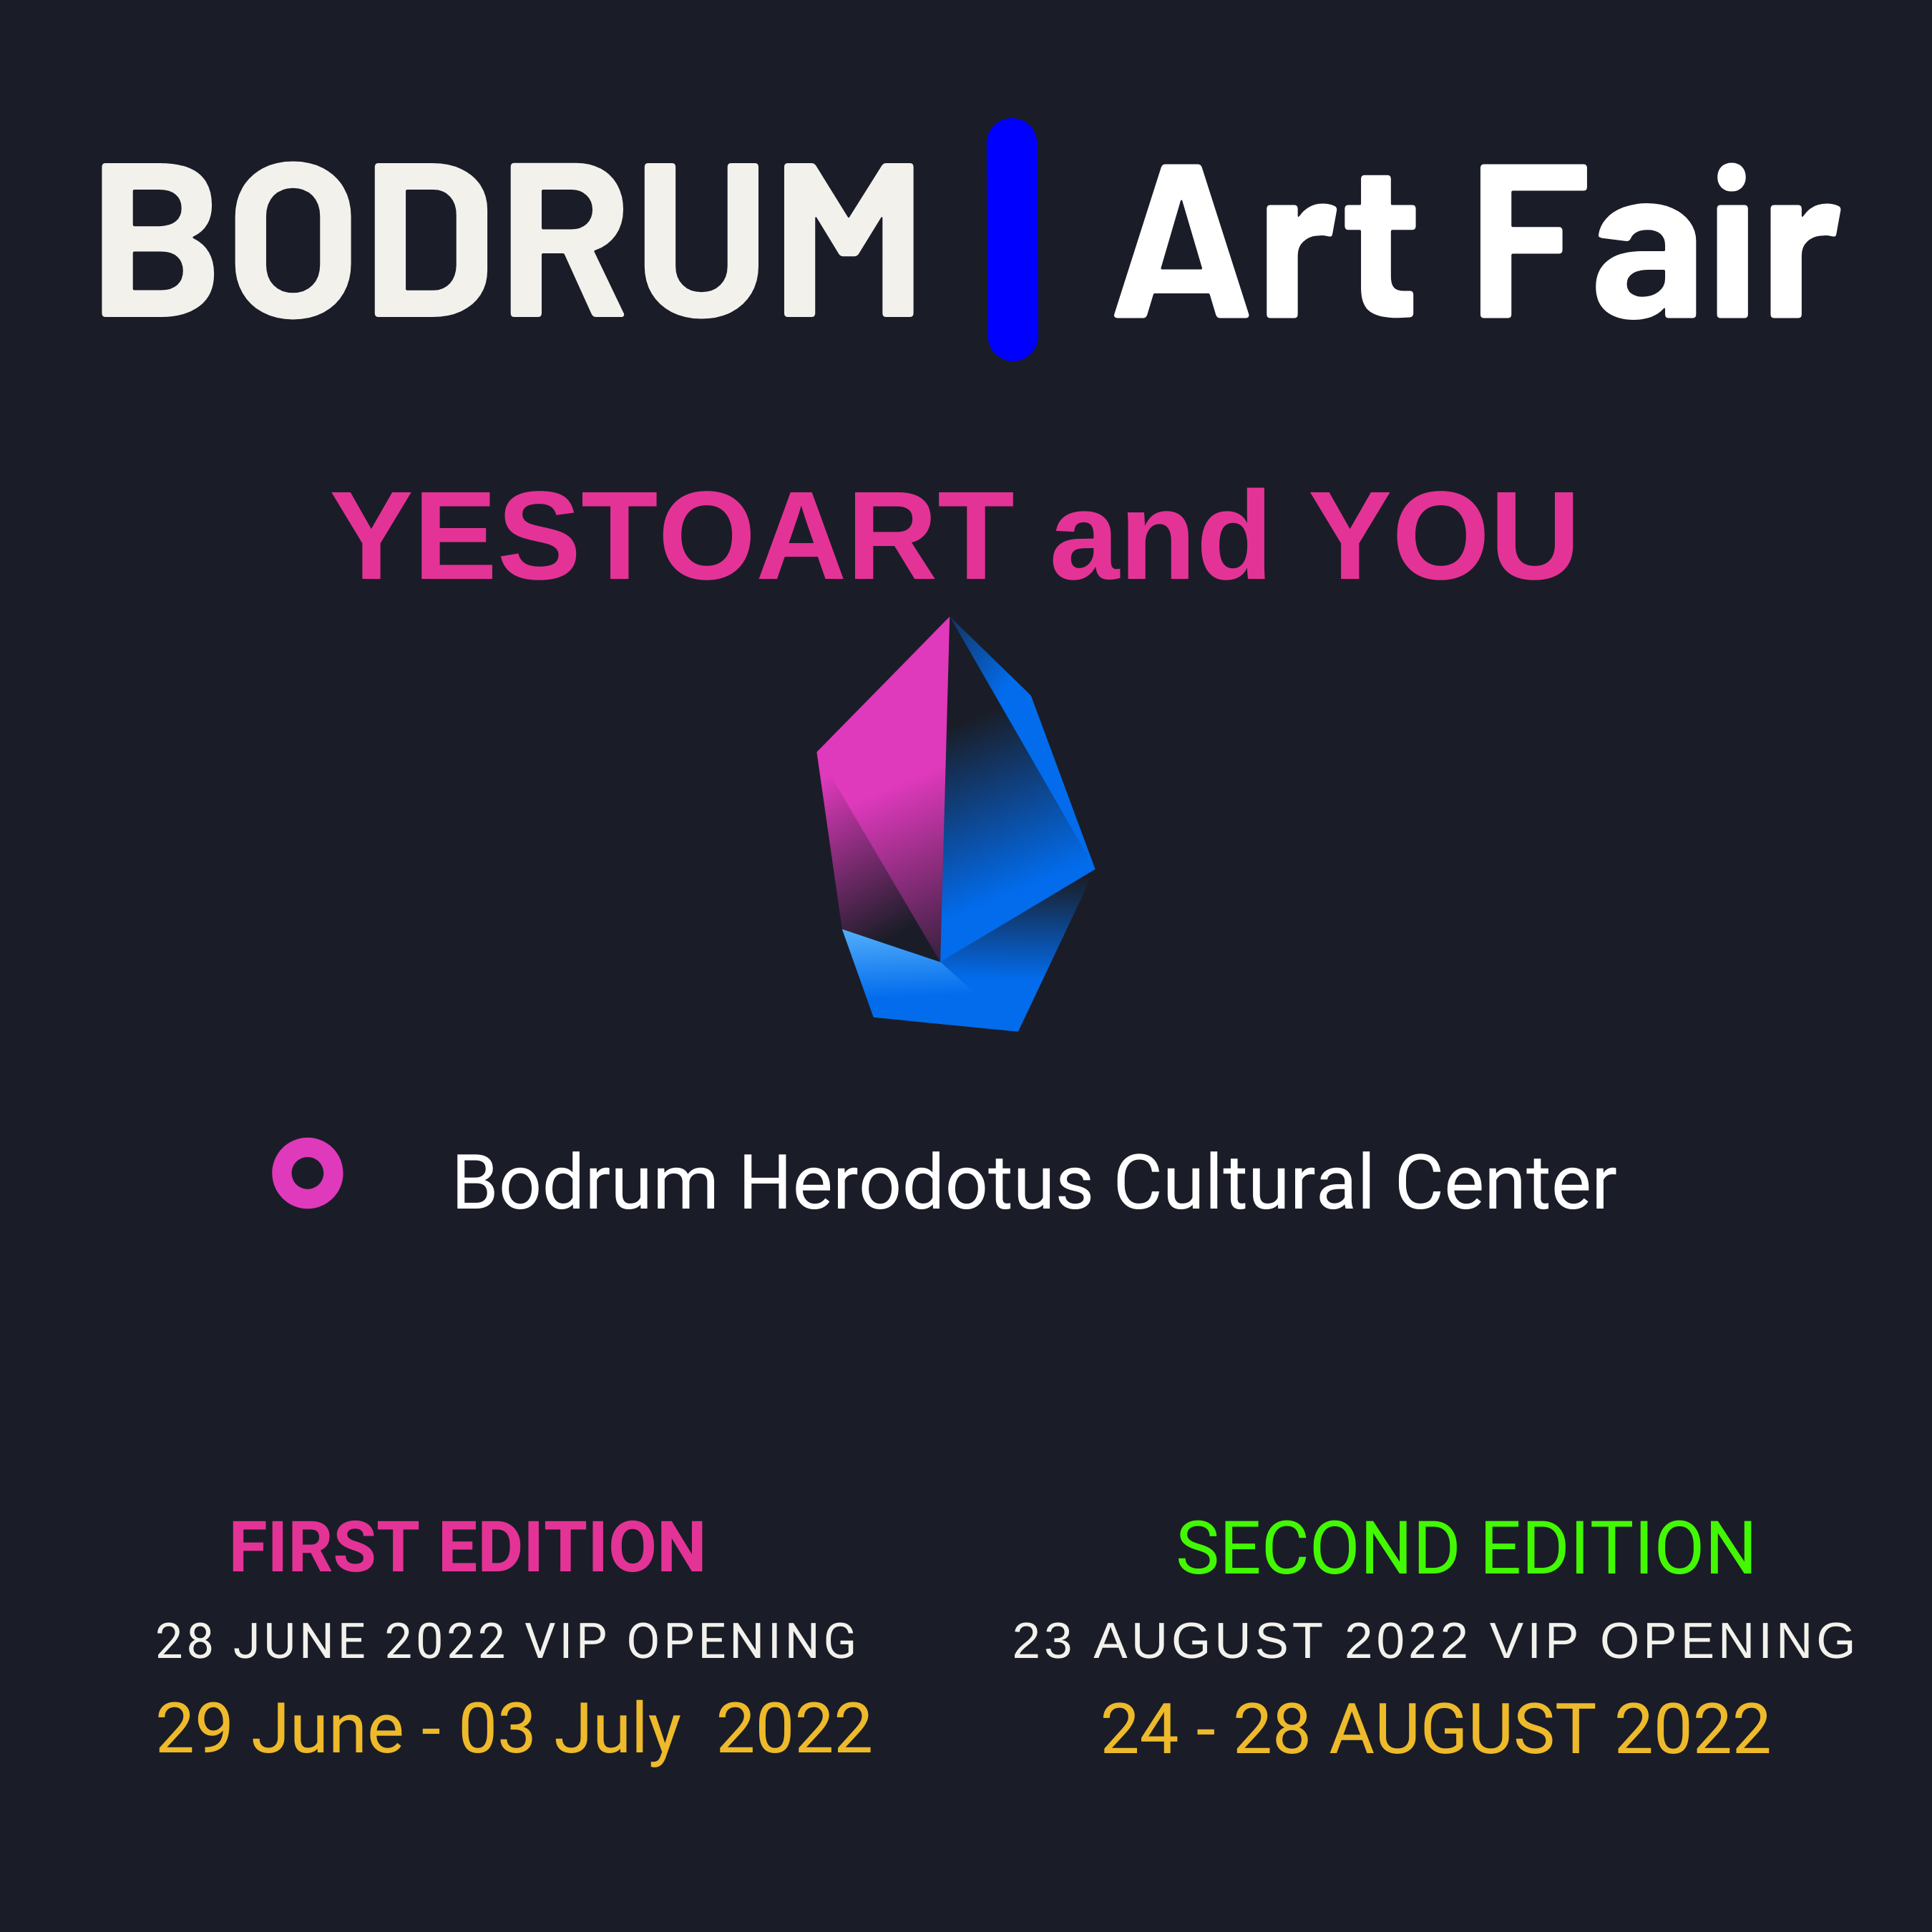 Bodrum Art Fair